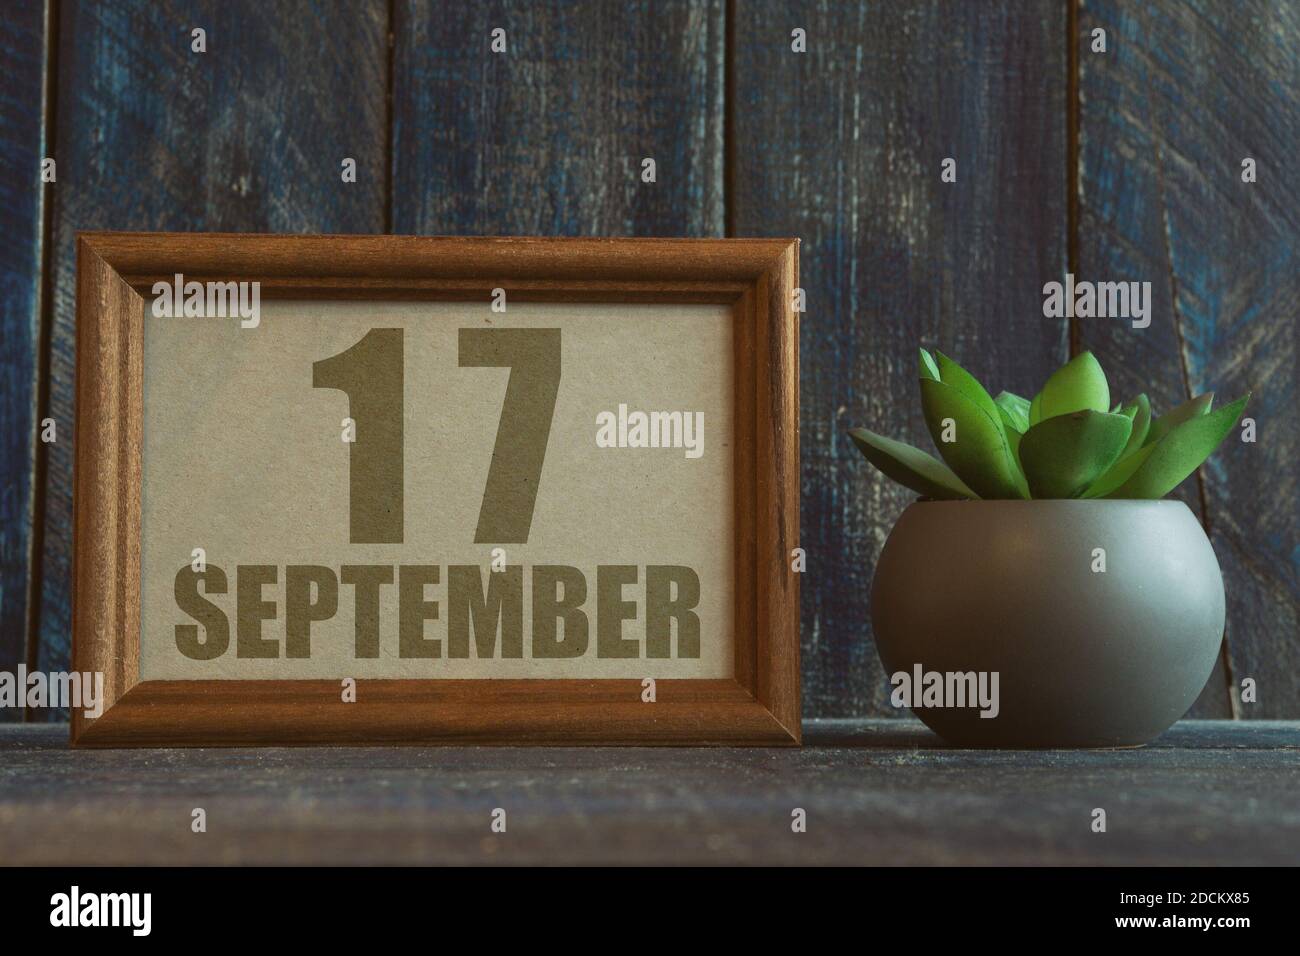 17 septembre. Jour 17 du mois, date dans le cadre à côté de succulent sur fond de bois automne mois, jour de l'année concept Banque D'Images